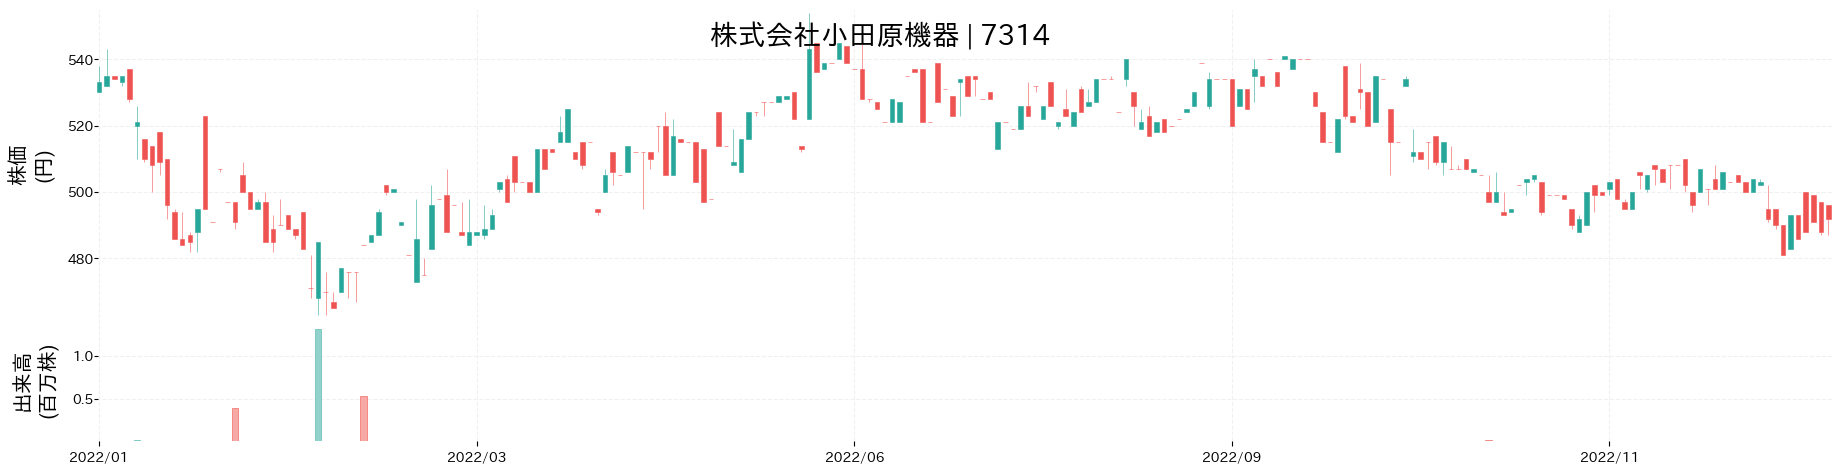 小田原機器の株価推移(2022)